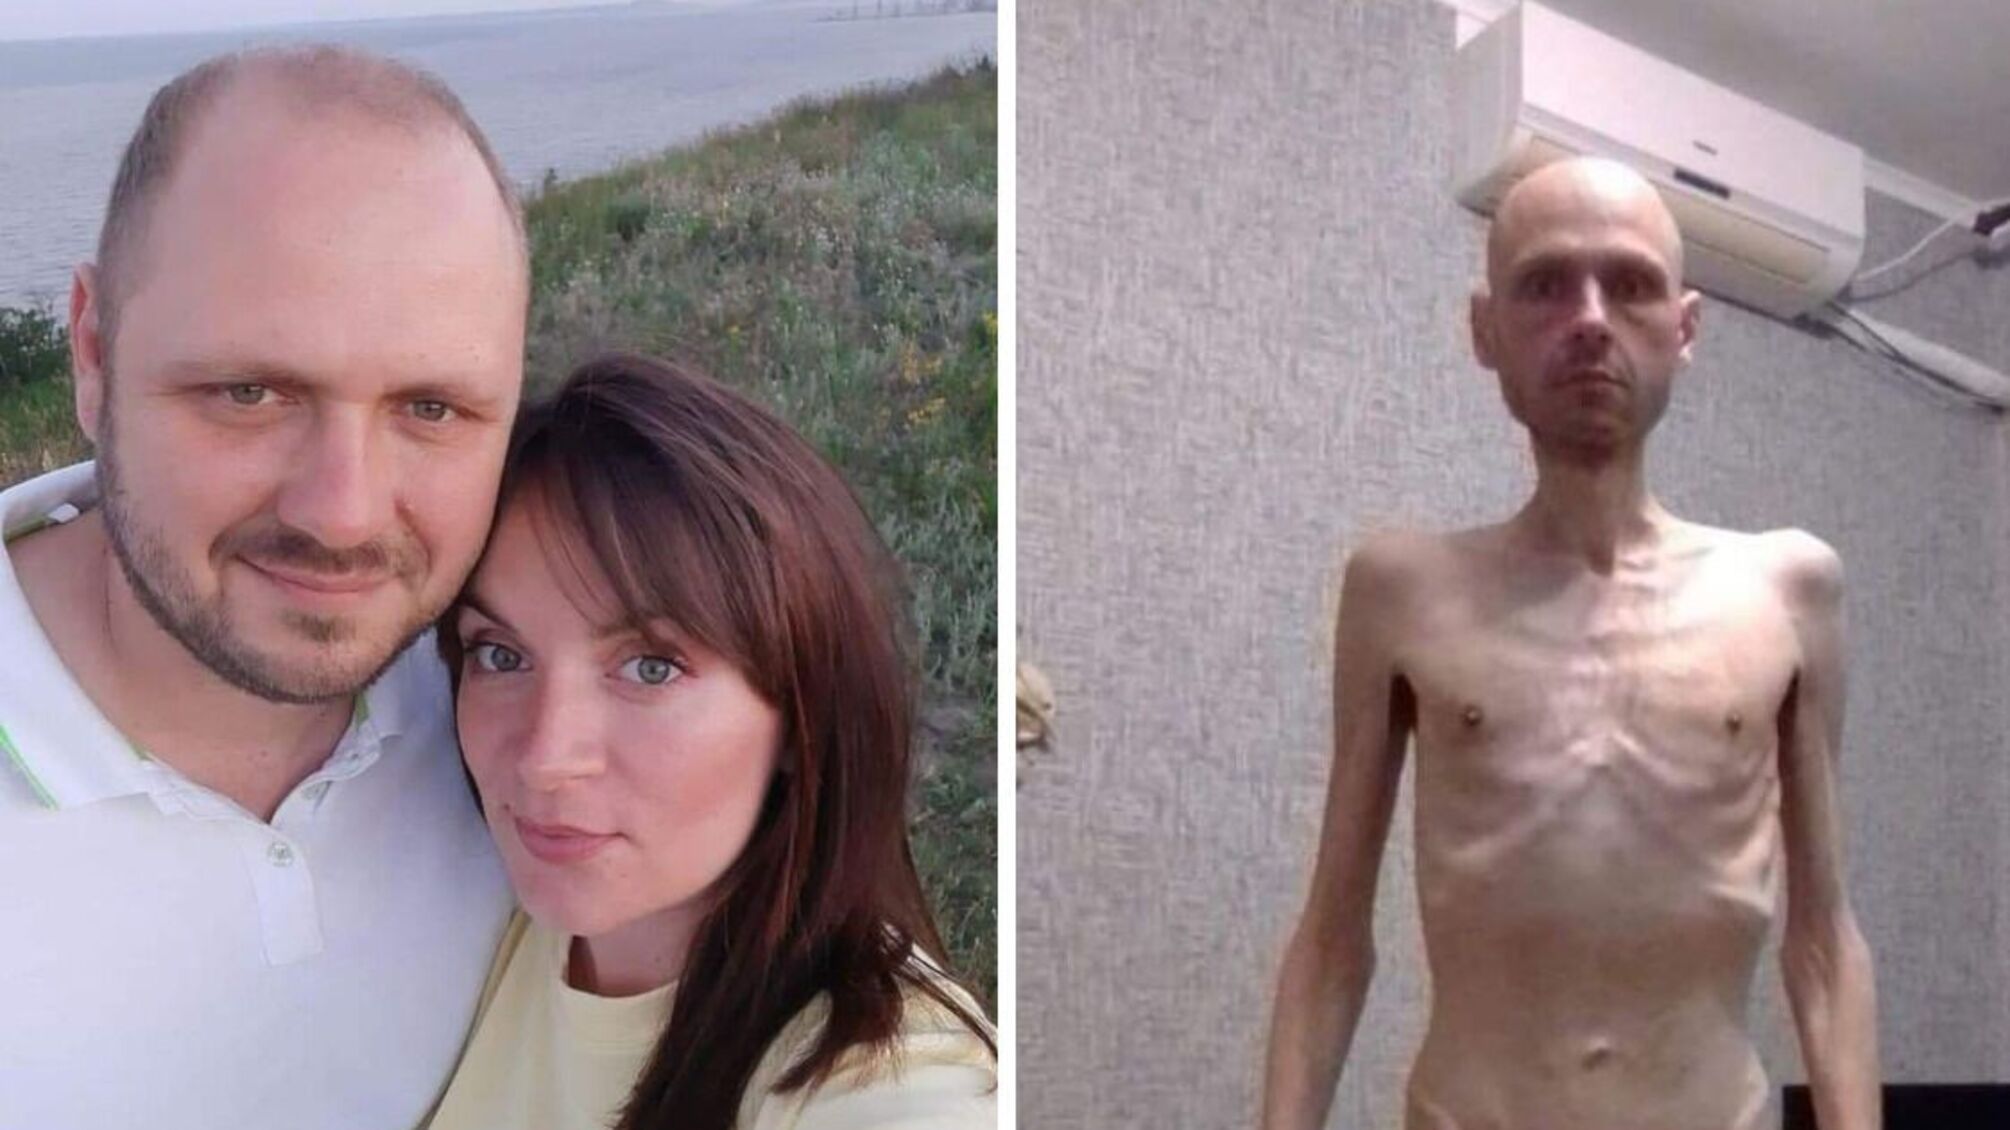 Возвращение из плена: военнослужащий рассказал о борьбе за жизнь и потери 38 кг